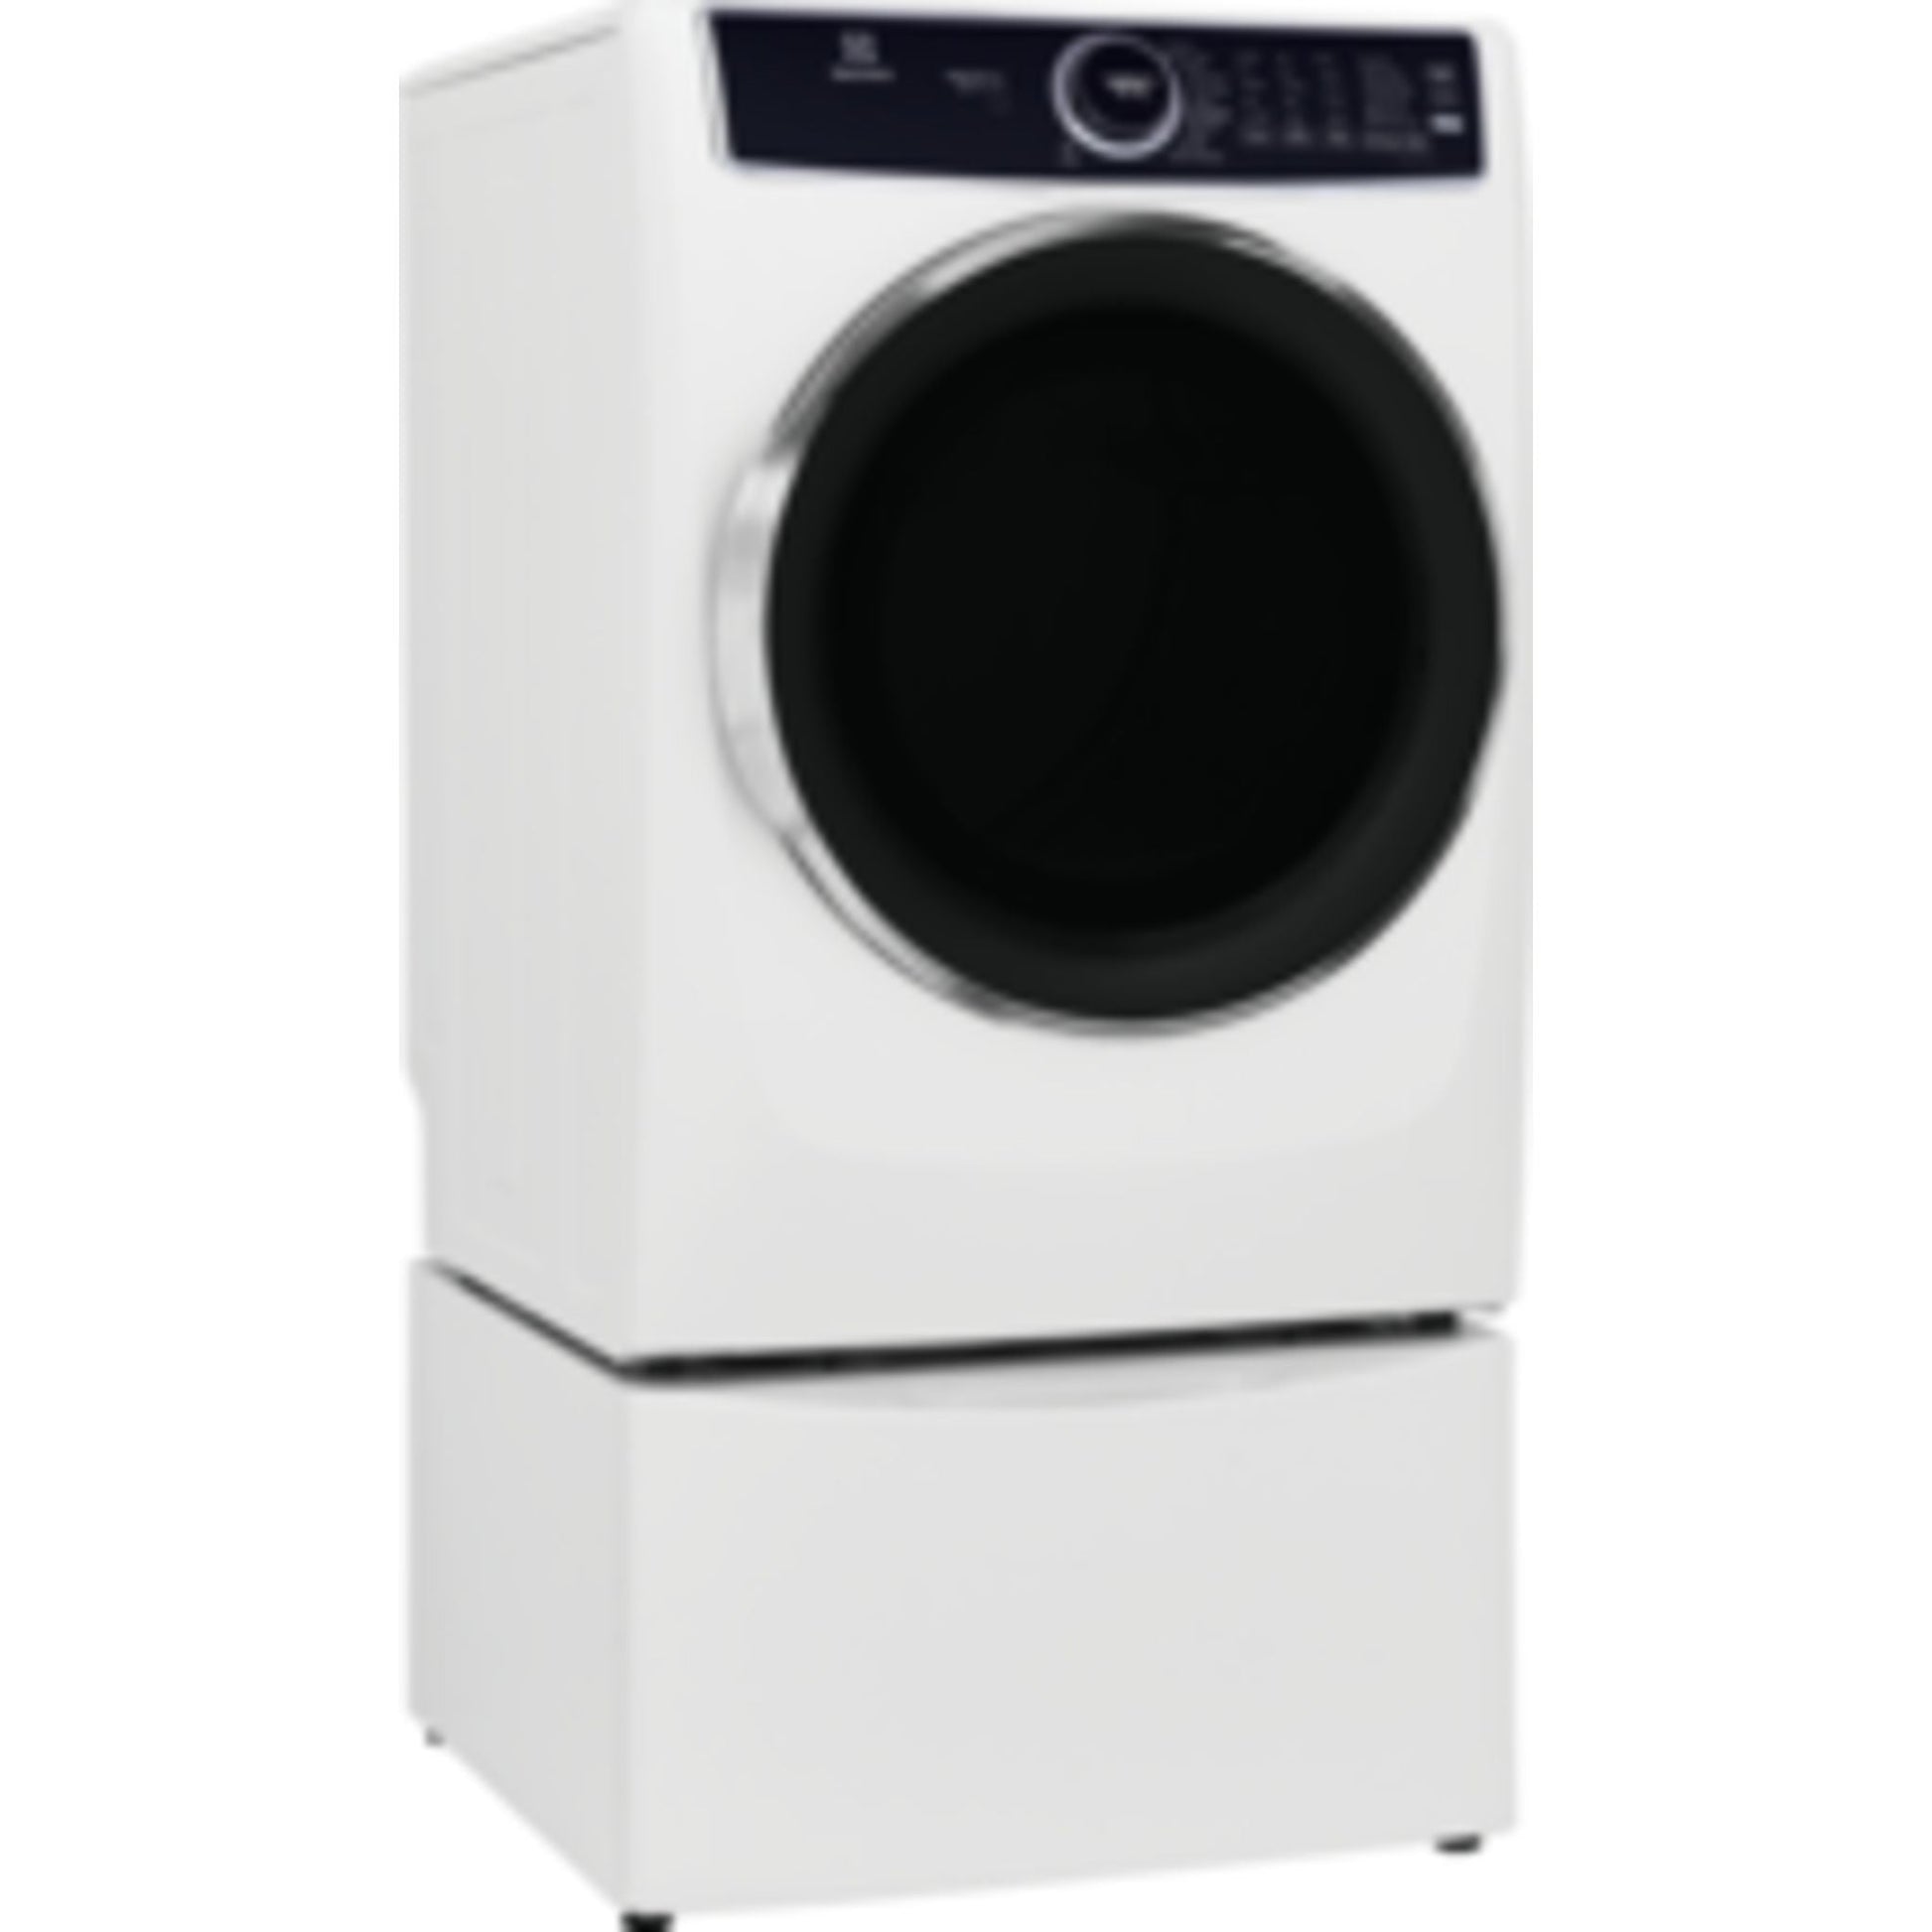 Electrolux Gas Dryer (ELFG7637AW) - White